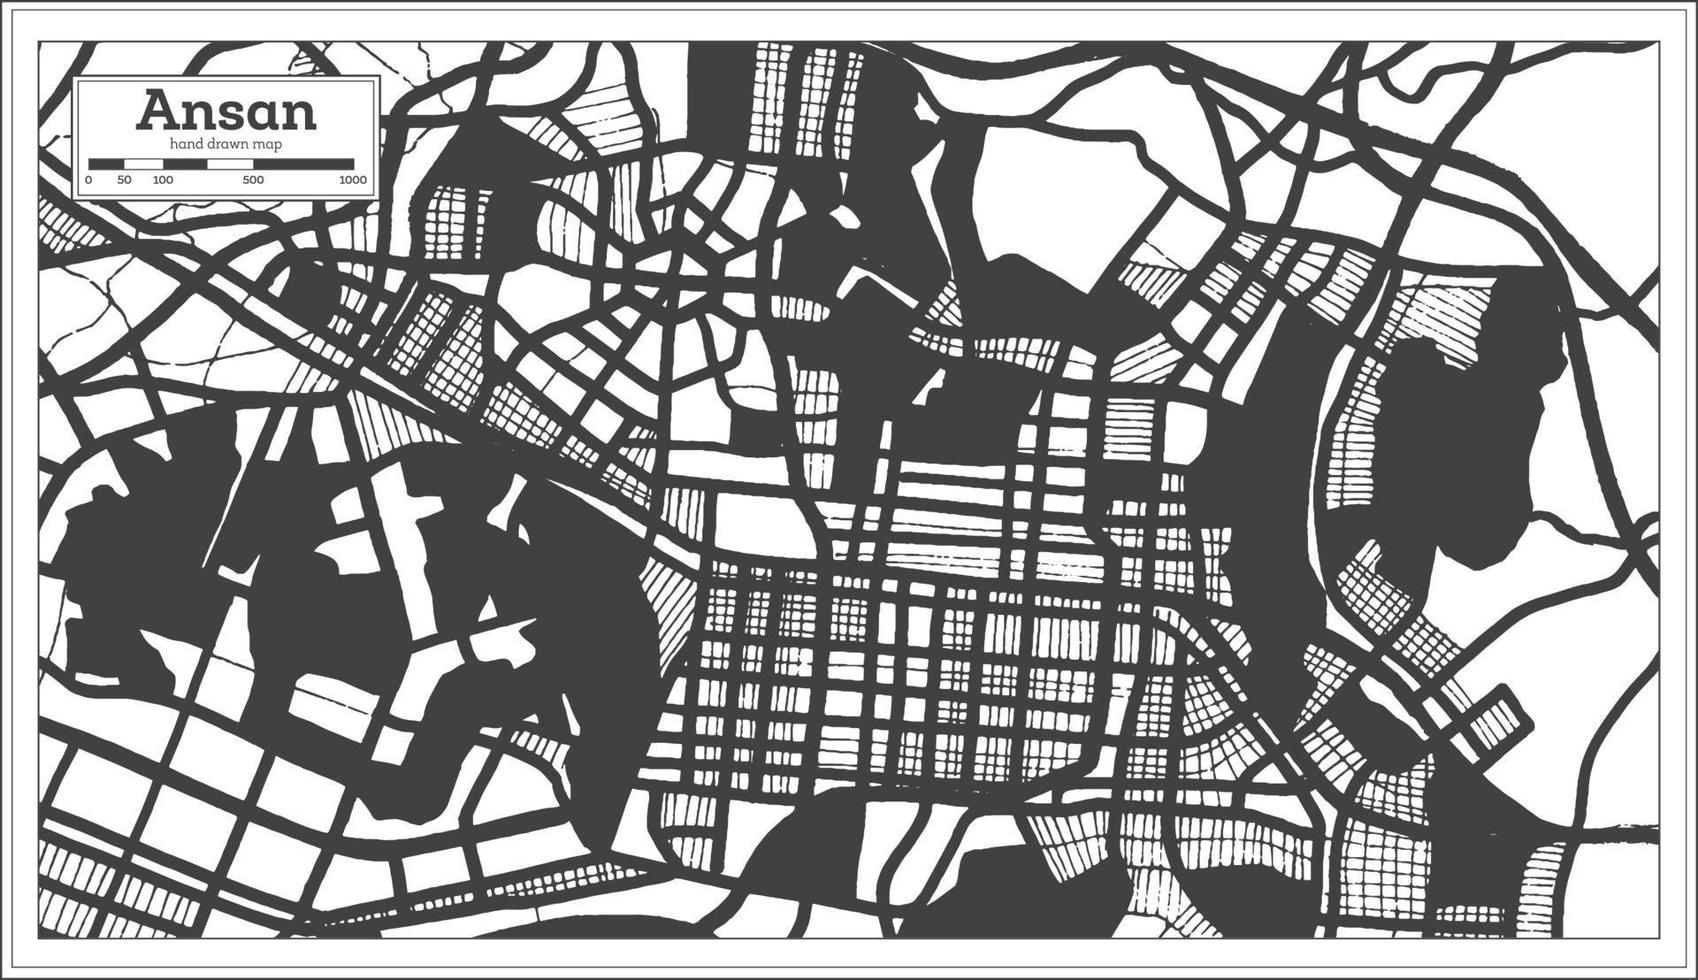 Ansan Südkorea Stadtplan in schwarz-weißer Farbe im Retro-Stil. vektor